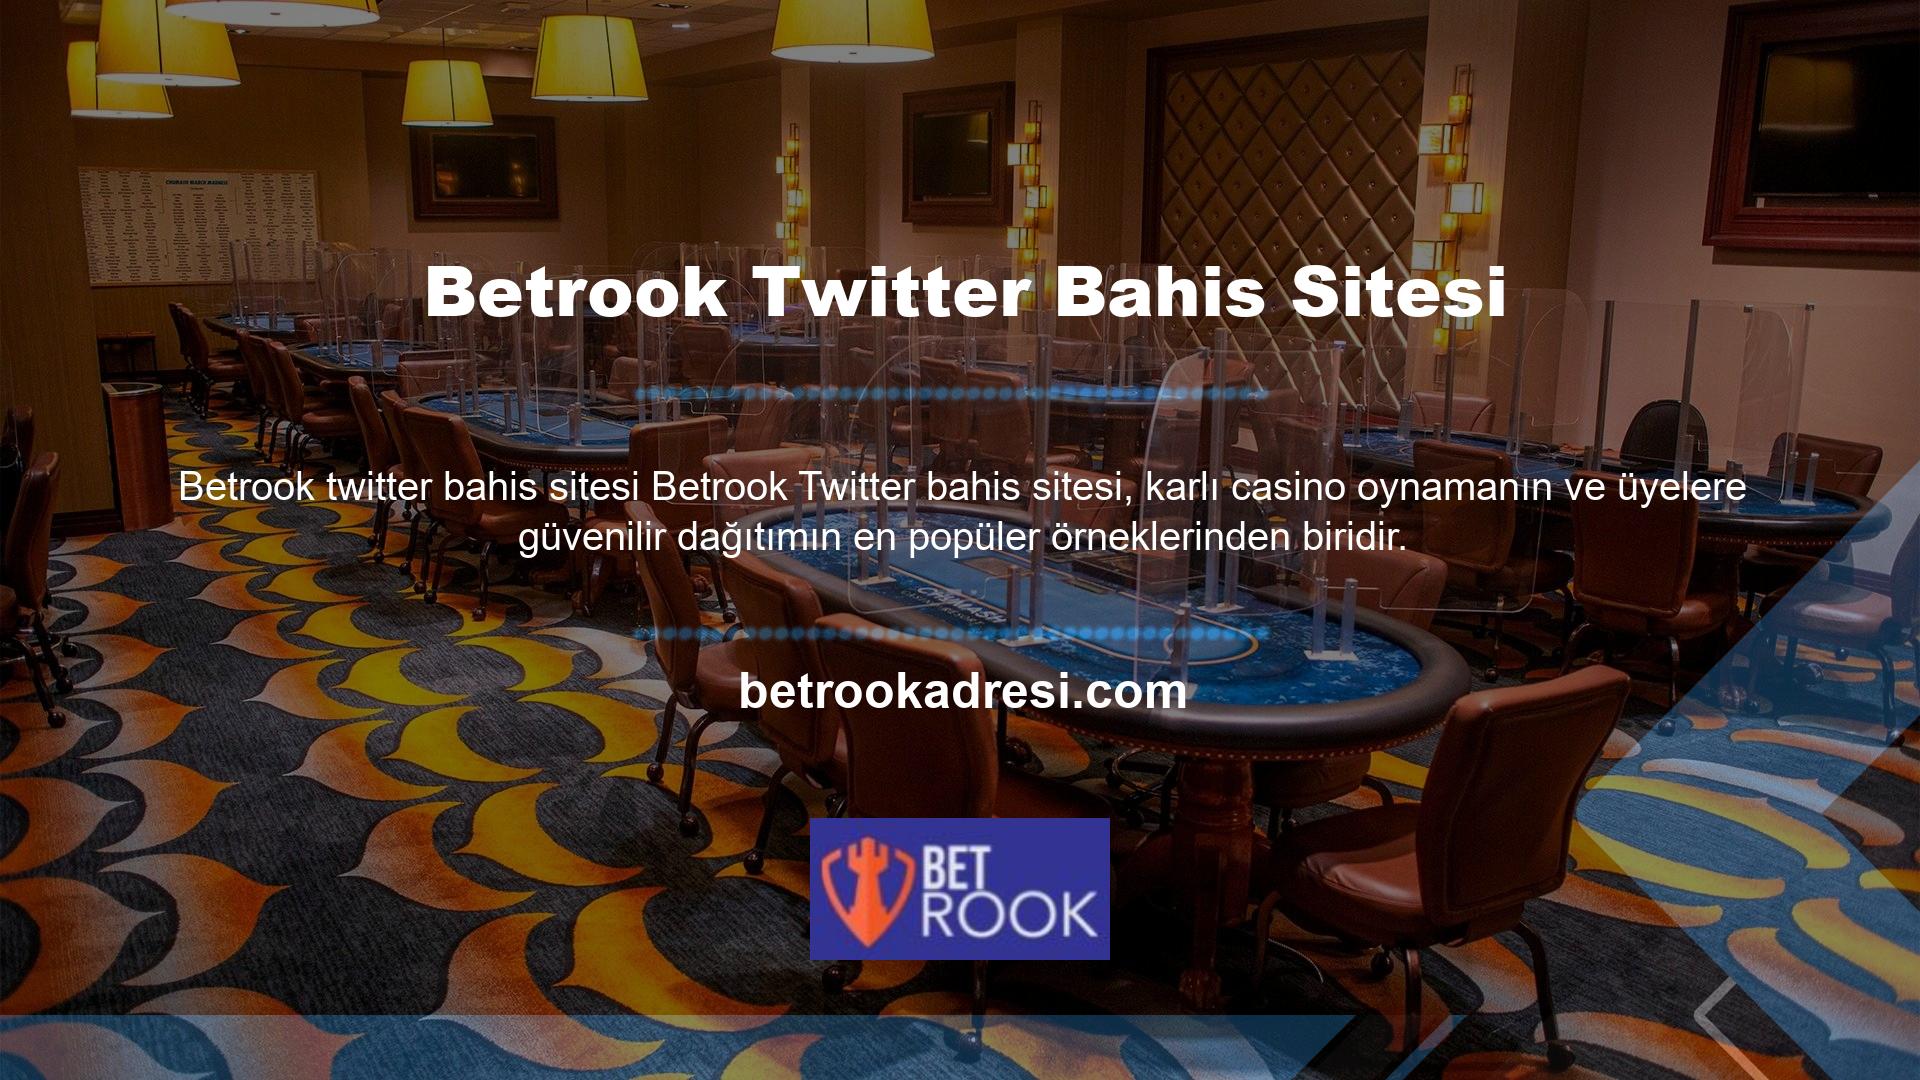 Twitter sanal bahis karlı mı sorusuna Betrook olumlu yanıt vermesi de sektöre güvenilirlik katıyor